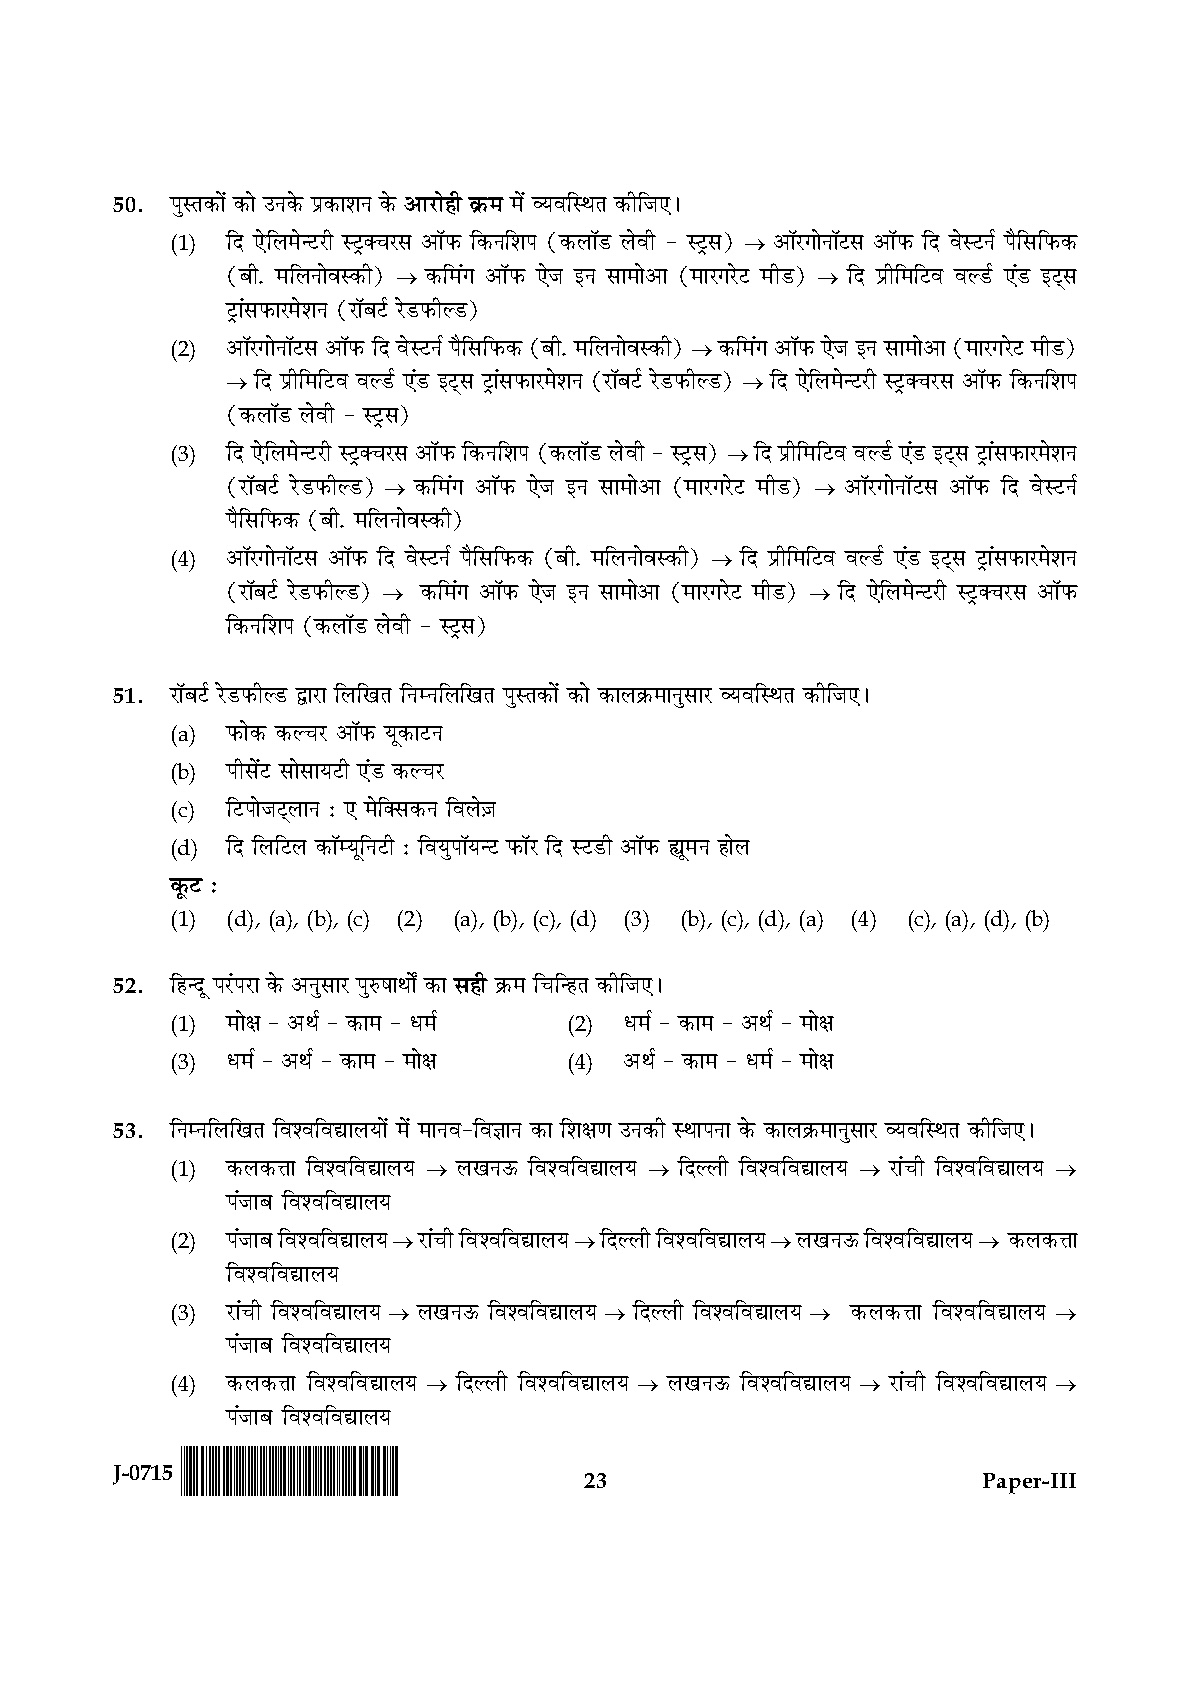 UGC NET Anthropology Question Paper III June 2015 23